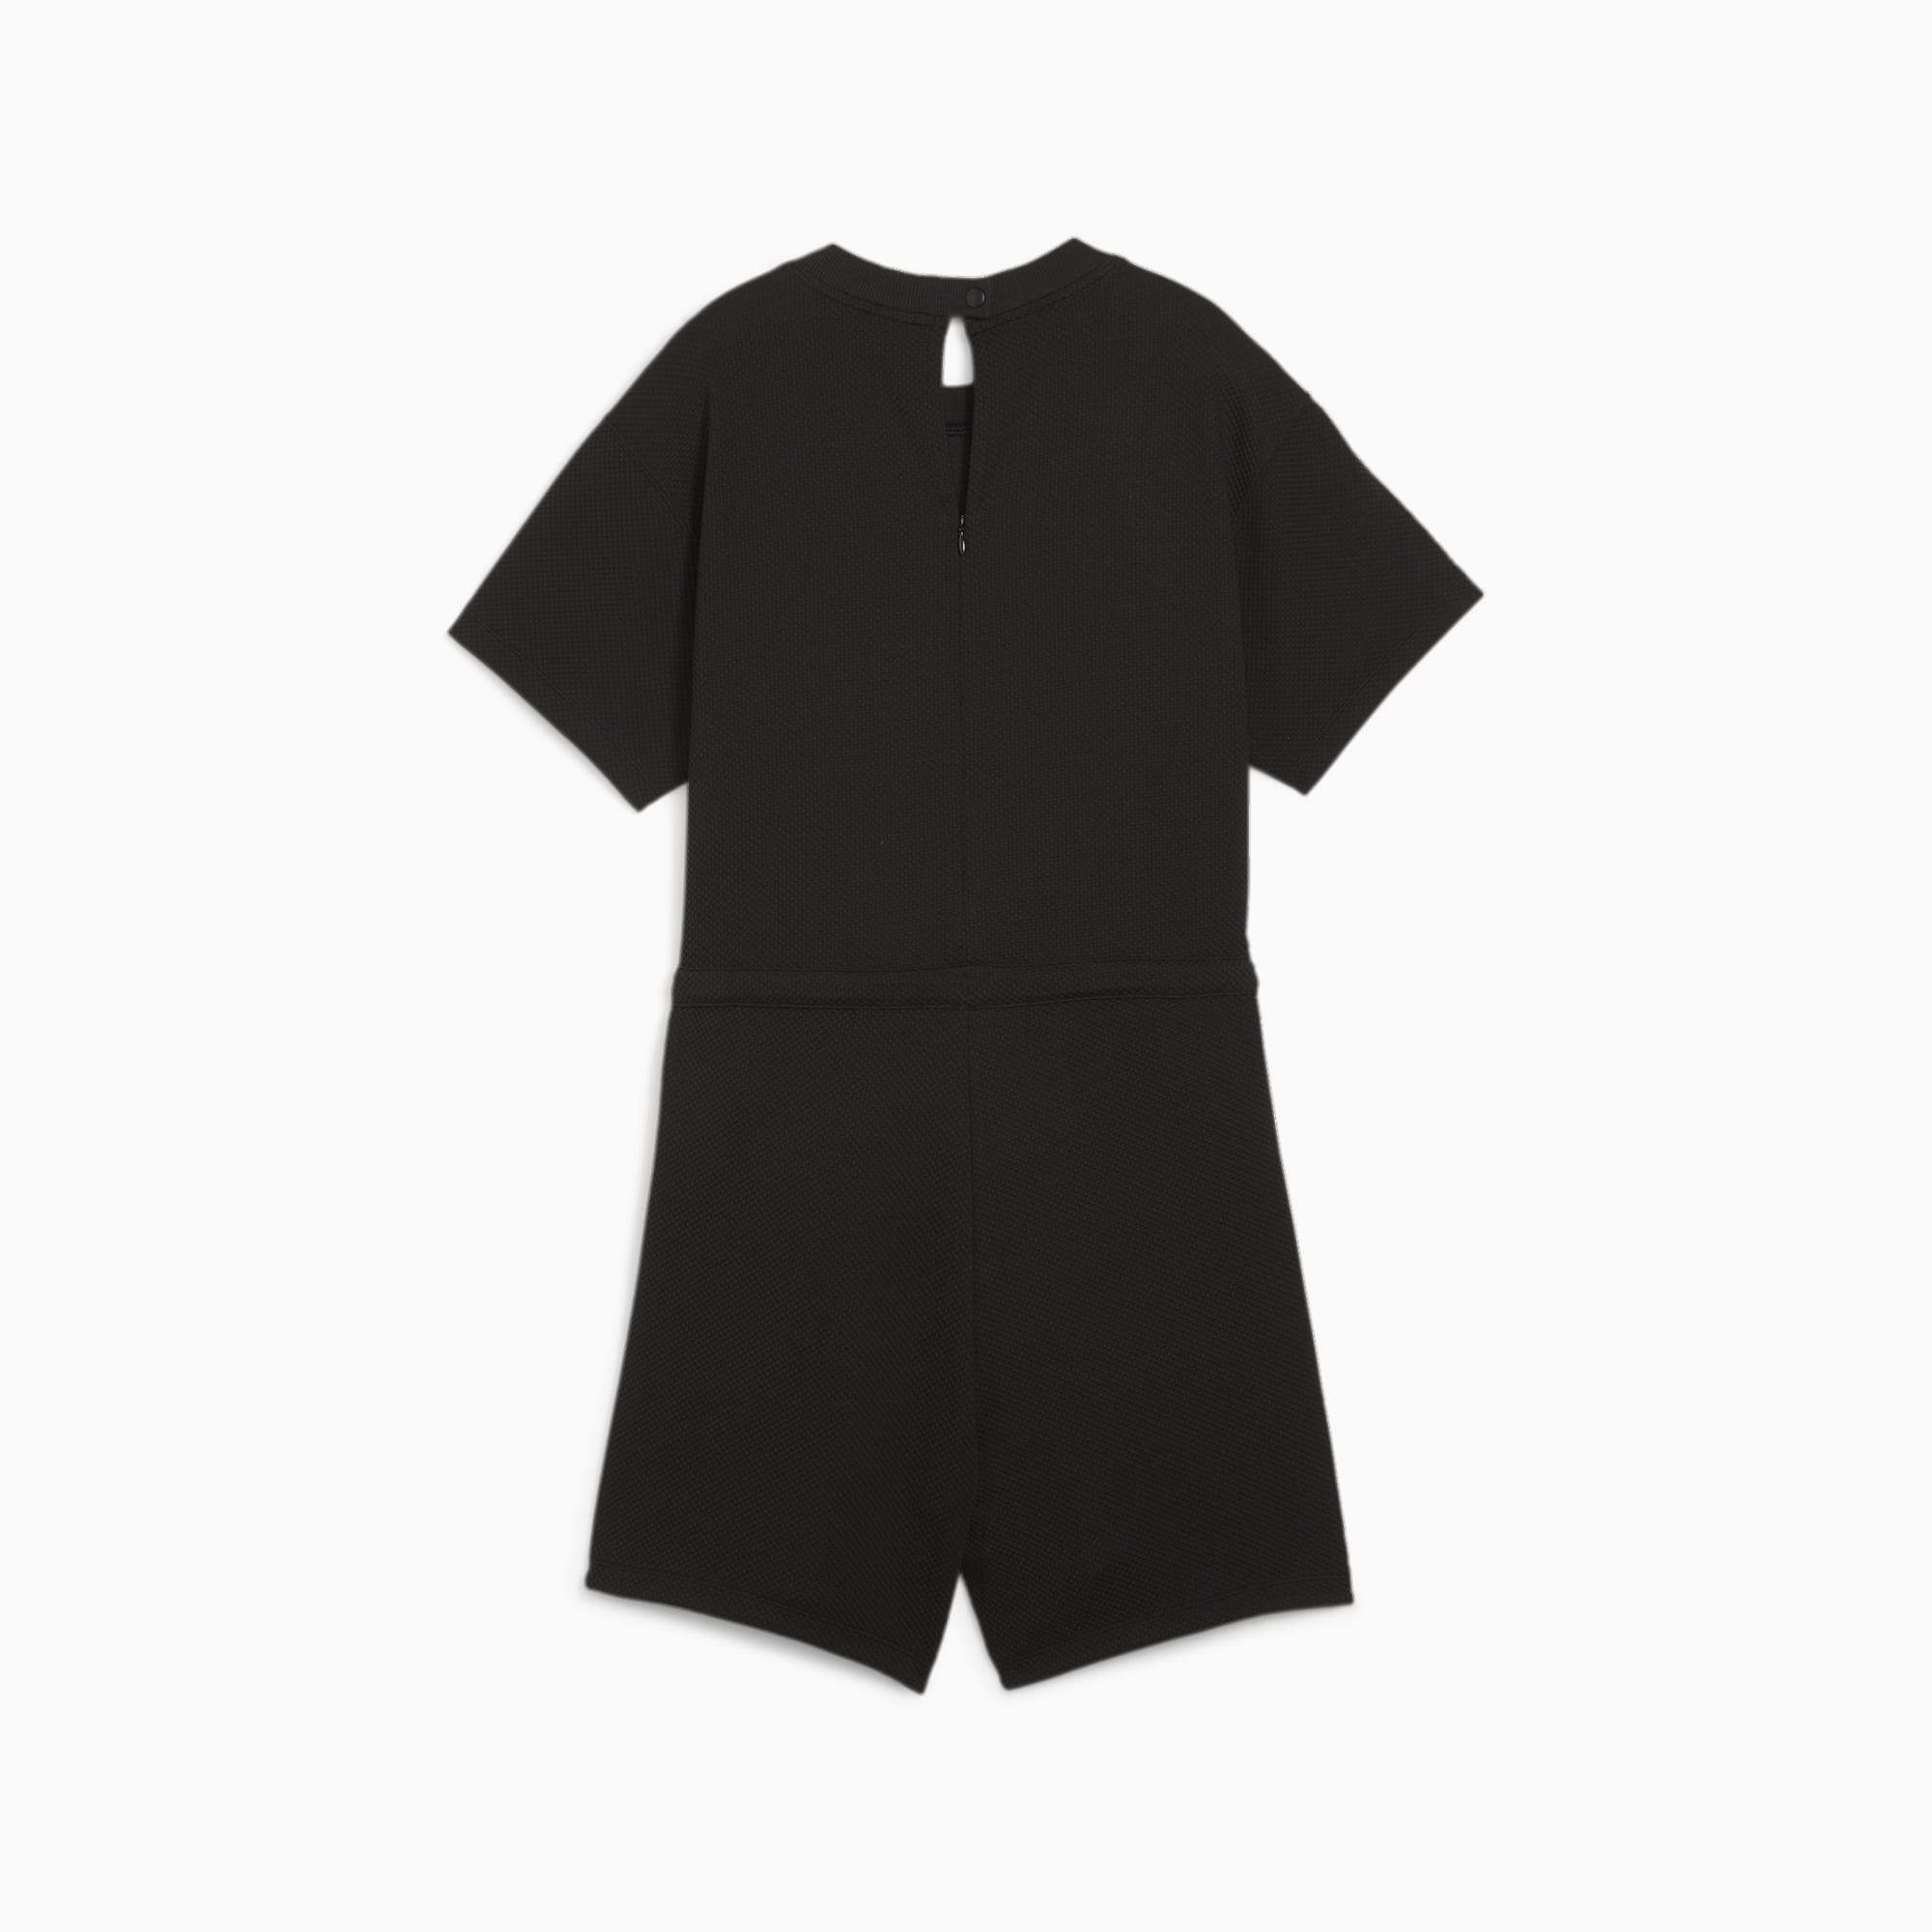 PUMA Her Women's Short Jumpsuit, Black, Size L, Clothing